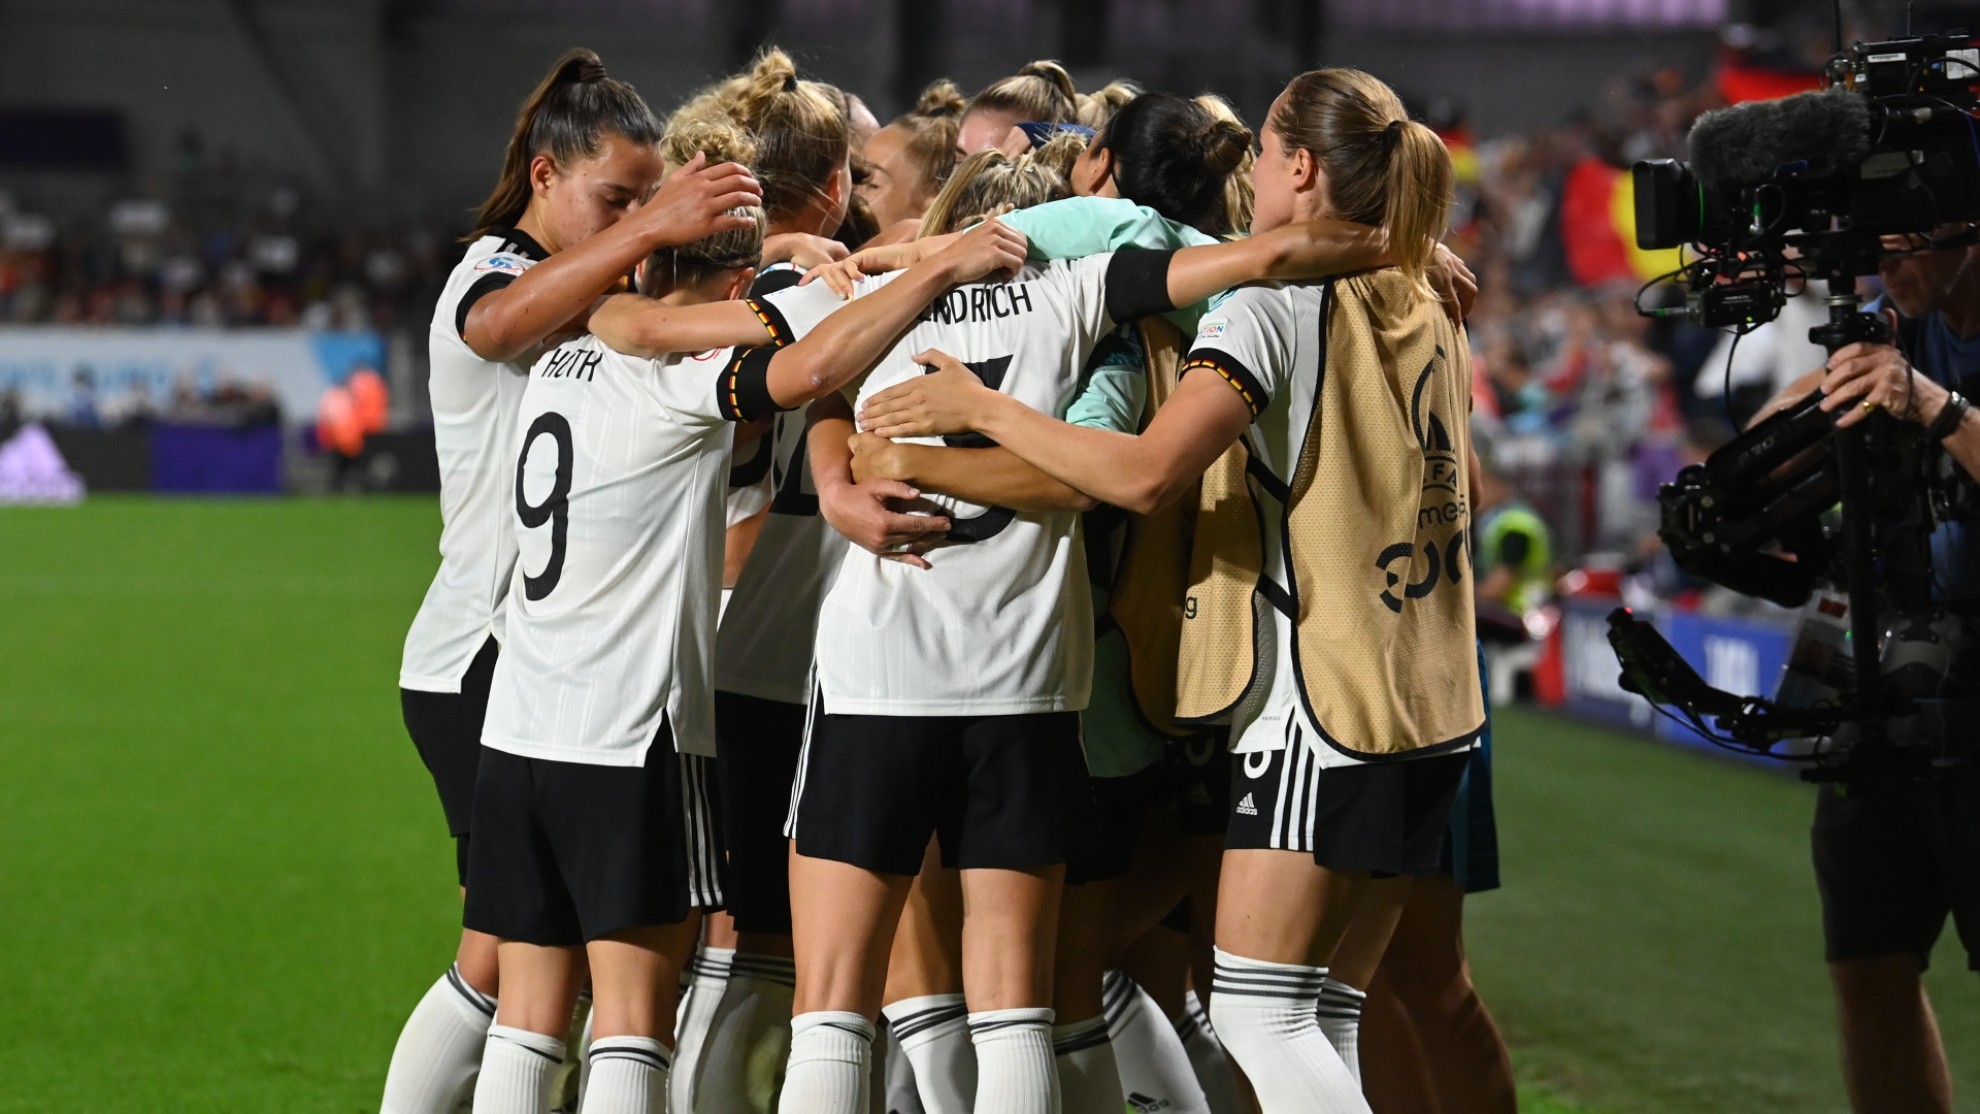 Alemania celebrando un gol durante el partido.